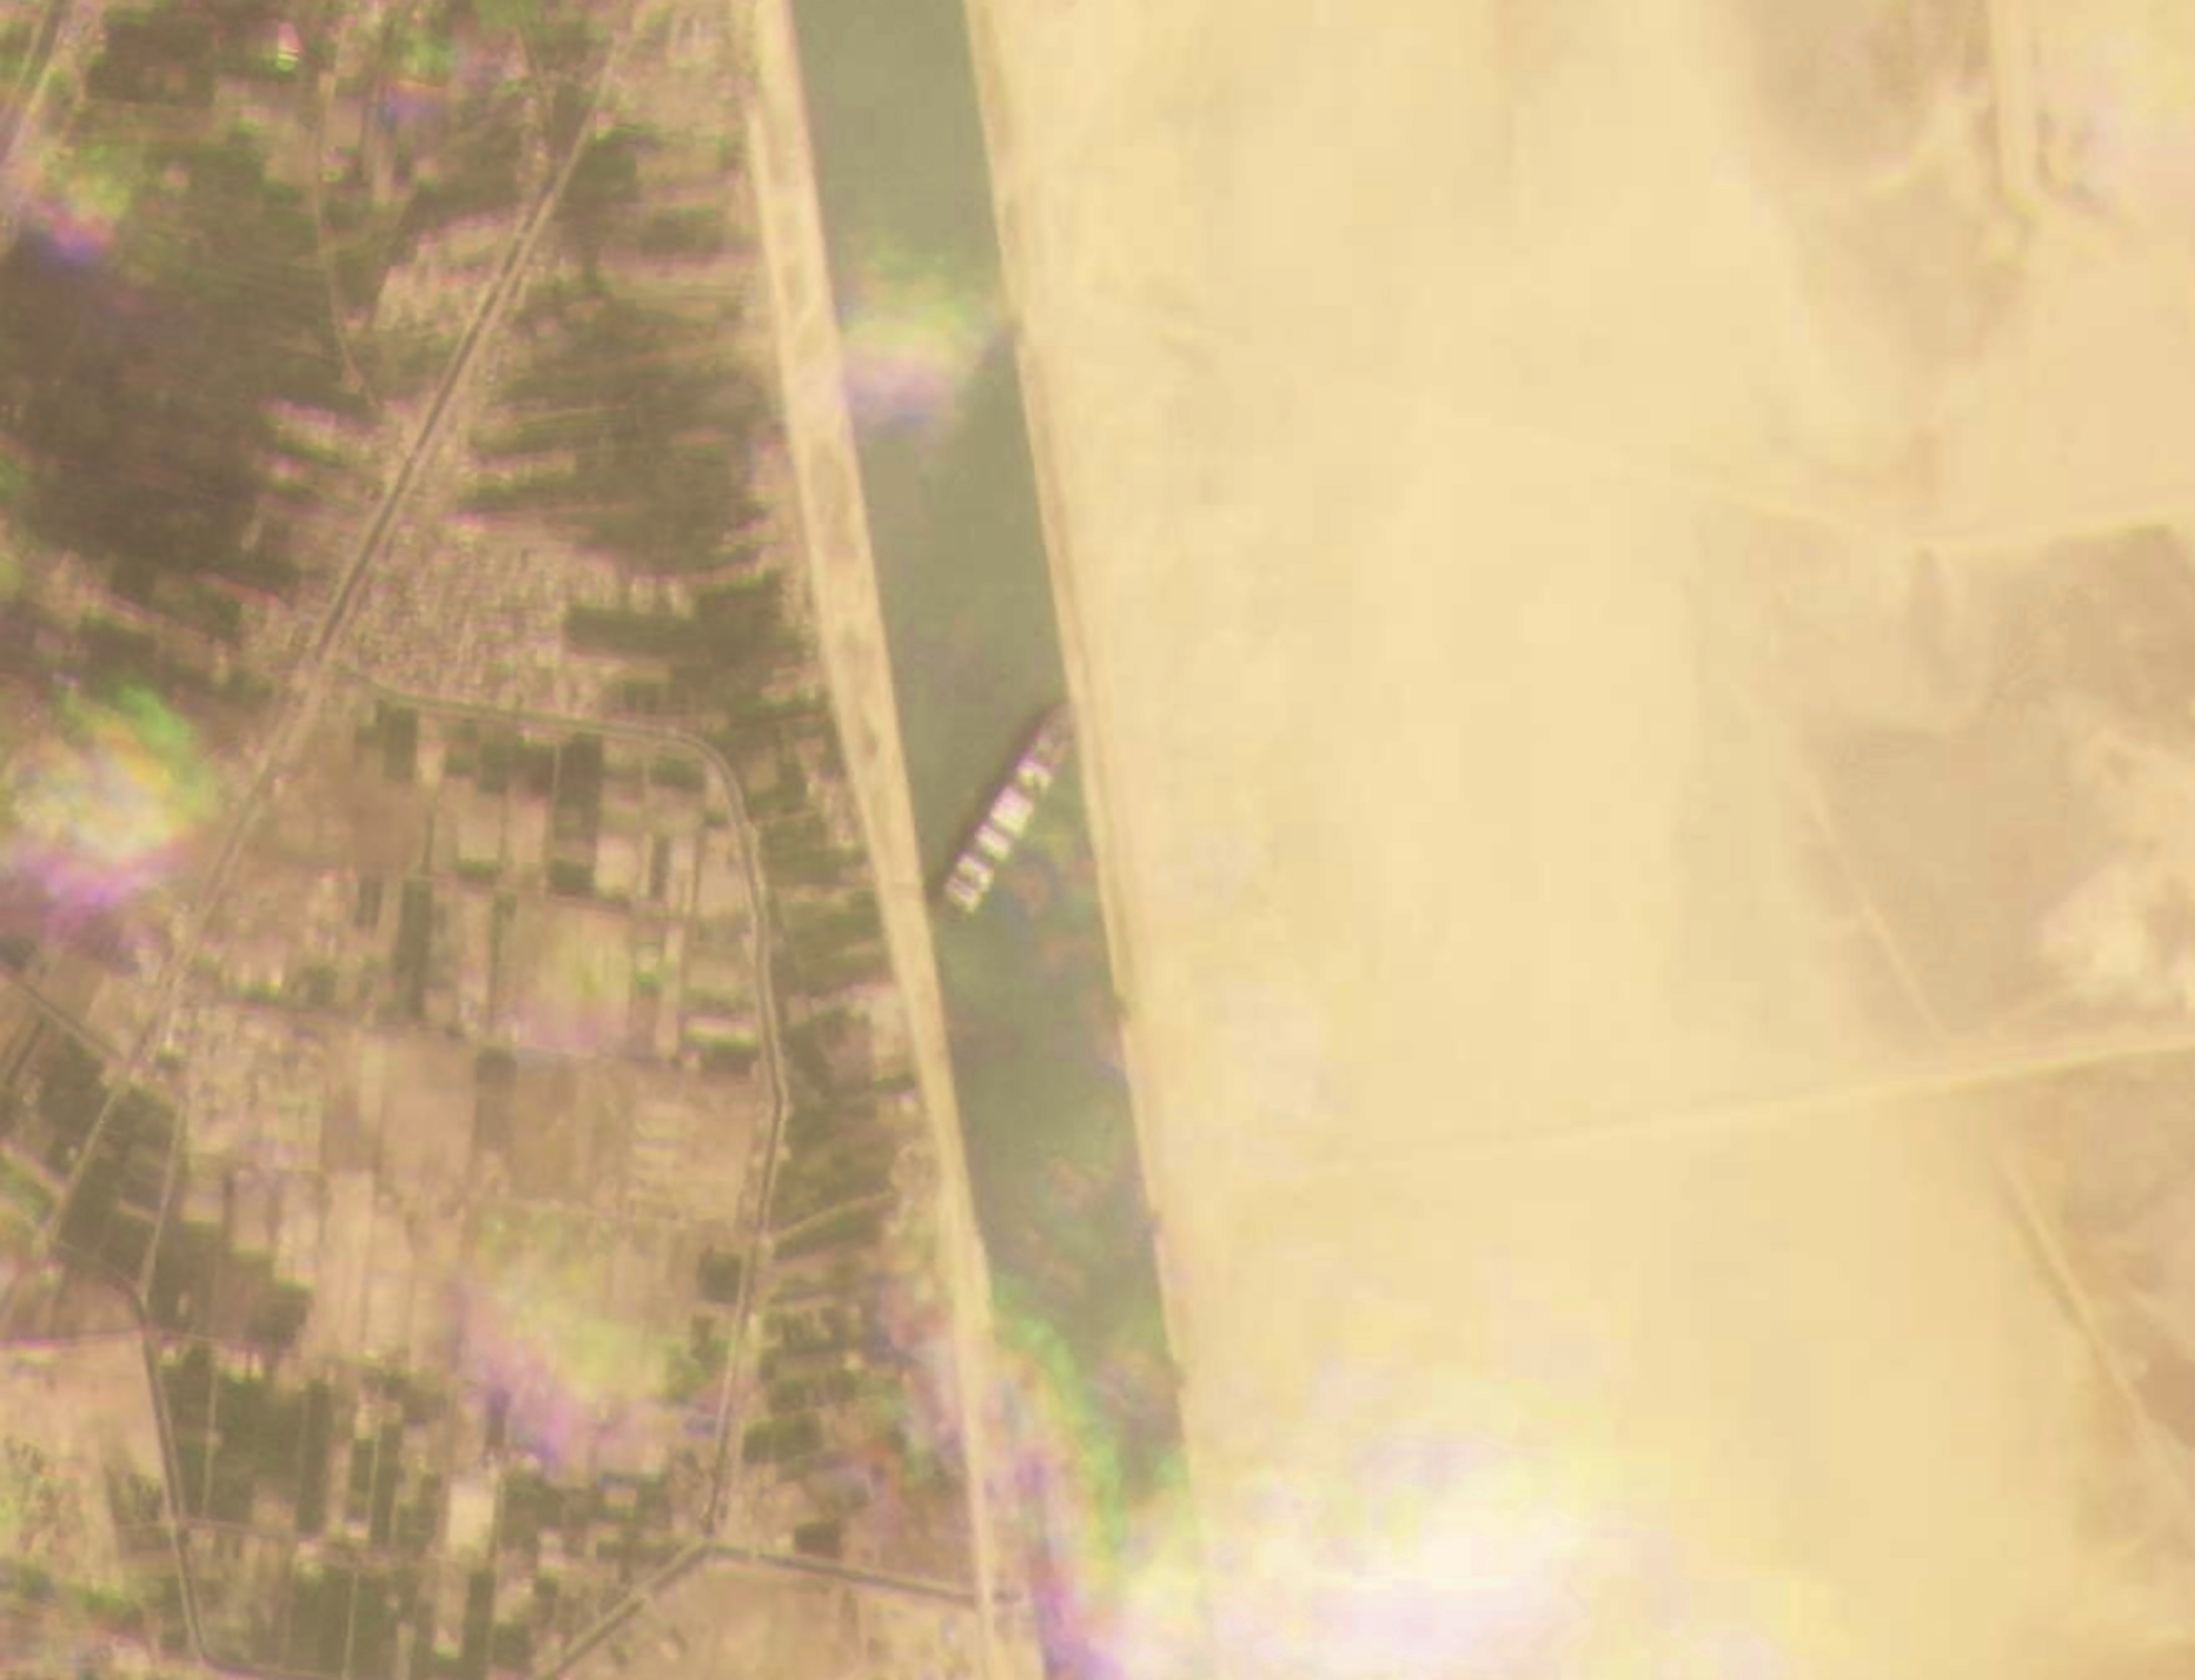 길이 400m, 22만t급 초대형 컨테이너선 ‘에버 기븐’이 지난 3월 23일 이집트 수에즈 운하 북쪽 수로 에 진입한 뒤 좌초해 양쪽 제방에 걸린 채 멈춰 서 있는 장면을 플래닛 랩스 위성사진이 포착했다. AP 연합뉴스